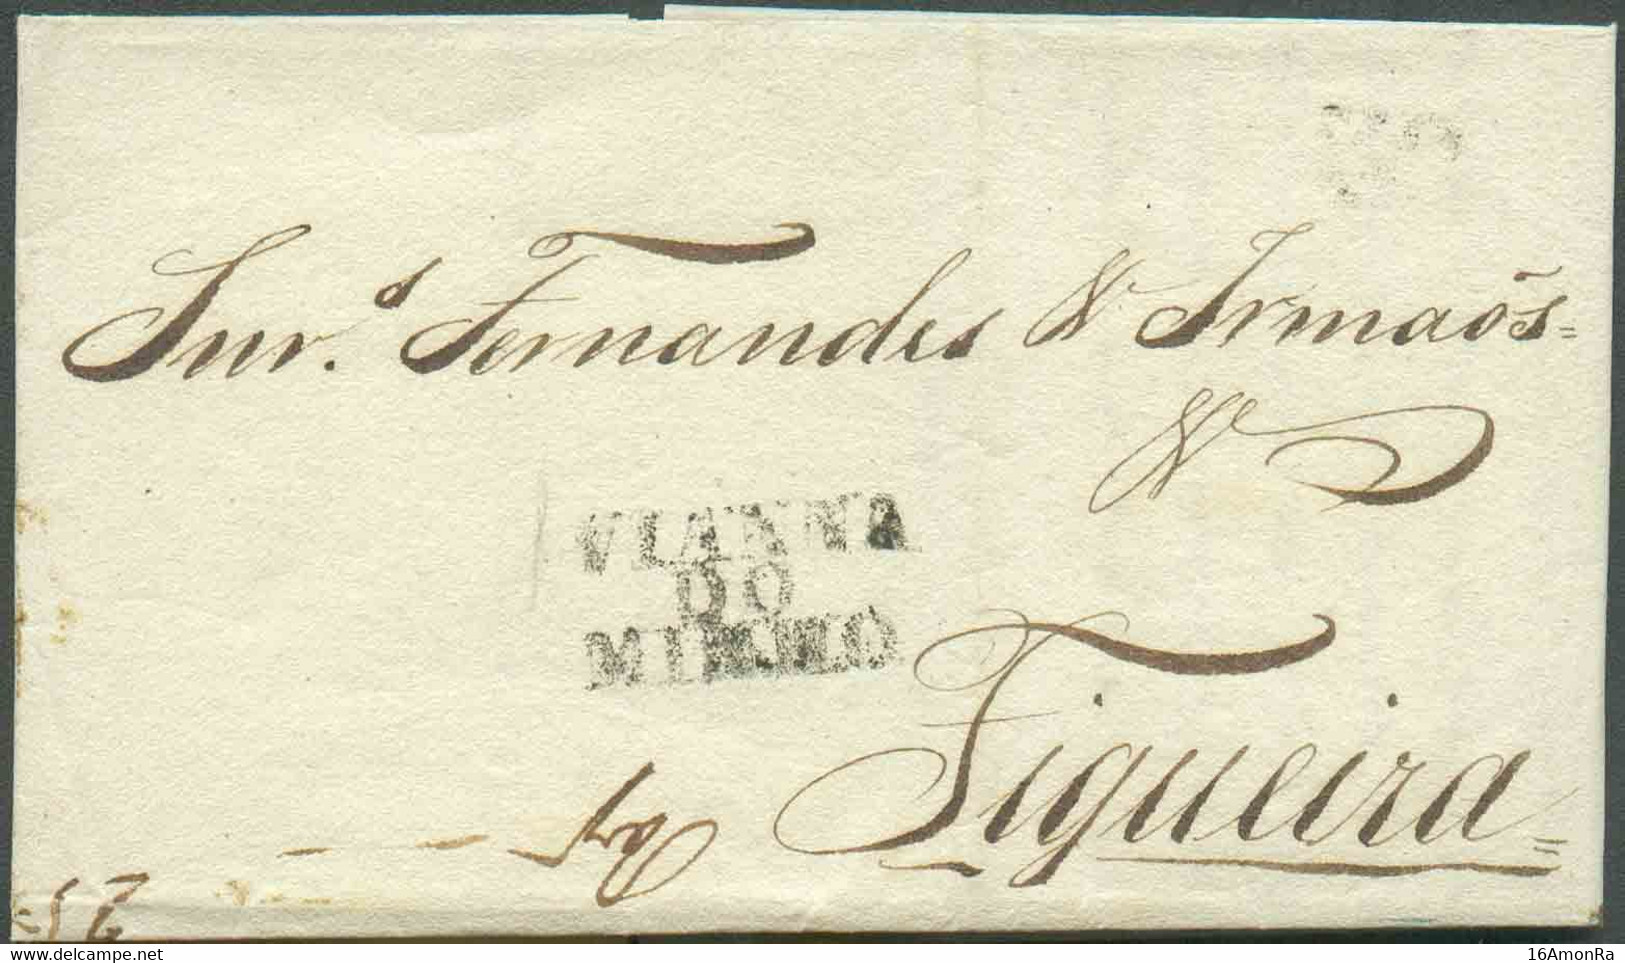 LAC De VIANNA DO MINNHO du 18 Octobre 1840 Vers Figueira. - TB - 18091 - ...-1853 Préphilatélie